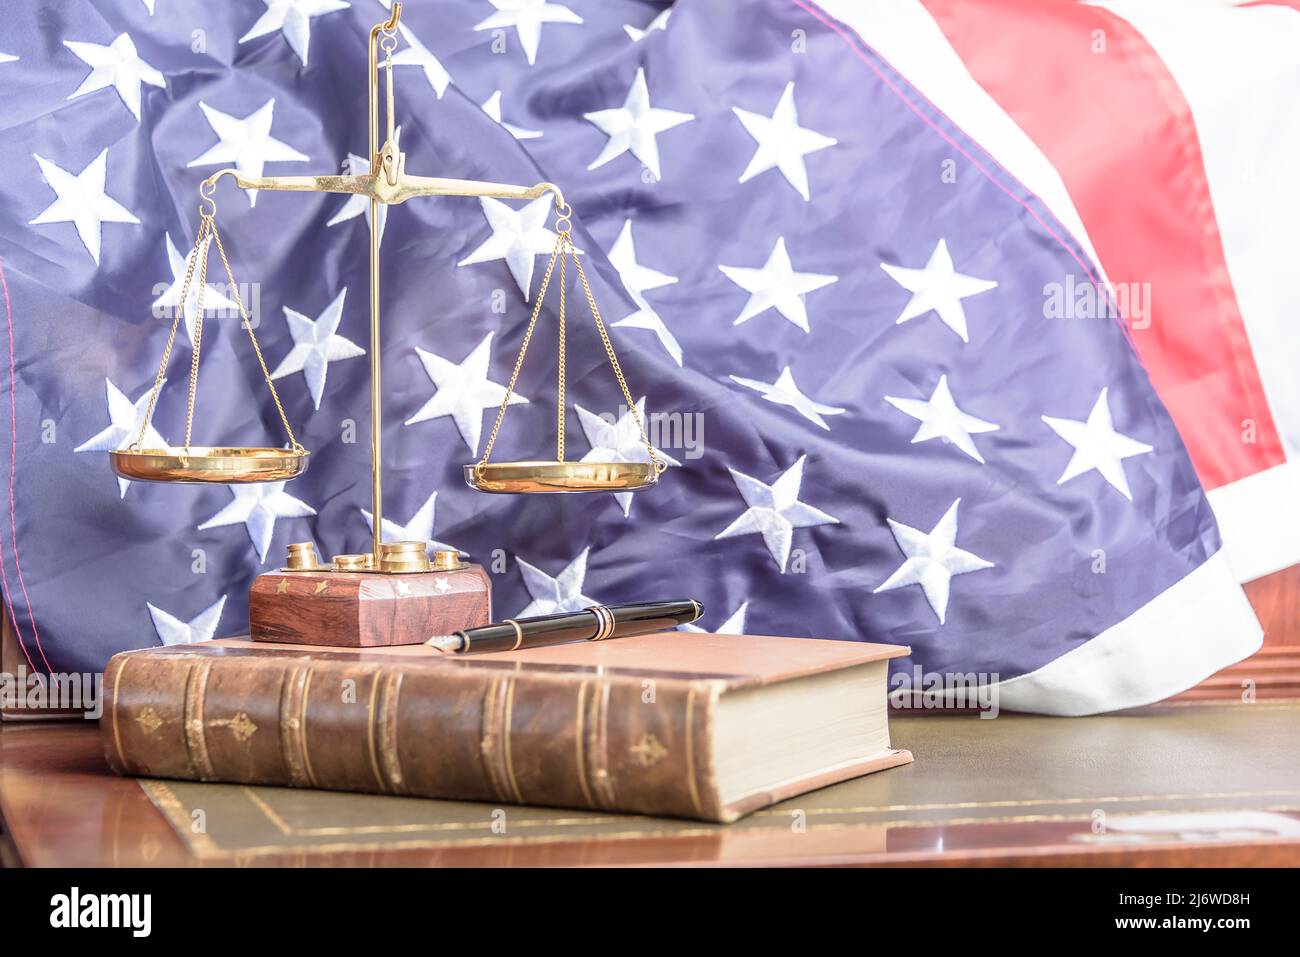 Familienrecht. Desktop-Foto einer auf Familienrecht spezialisierten Anwaltskanzlei mit der Flagge der vereinigten Staaten im Hintergrund. Stockfoto